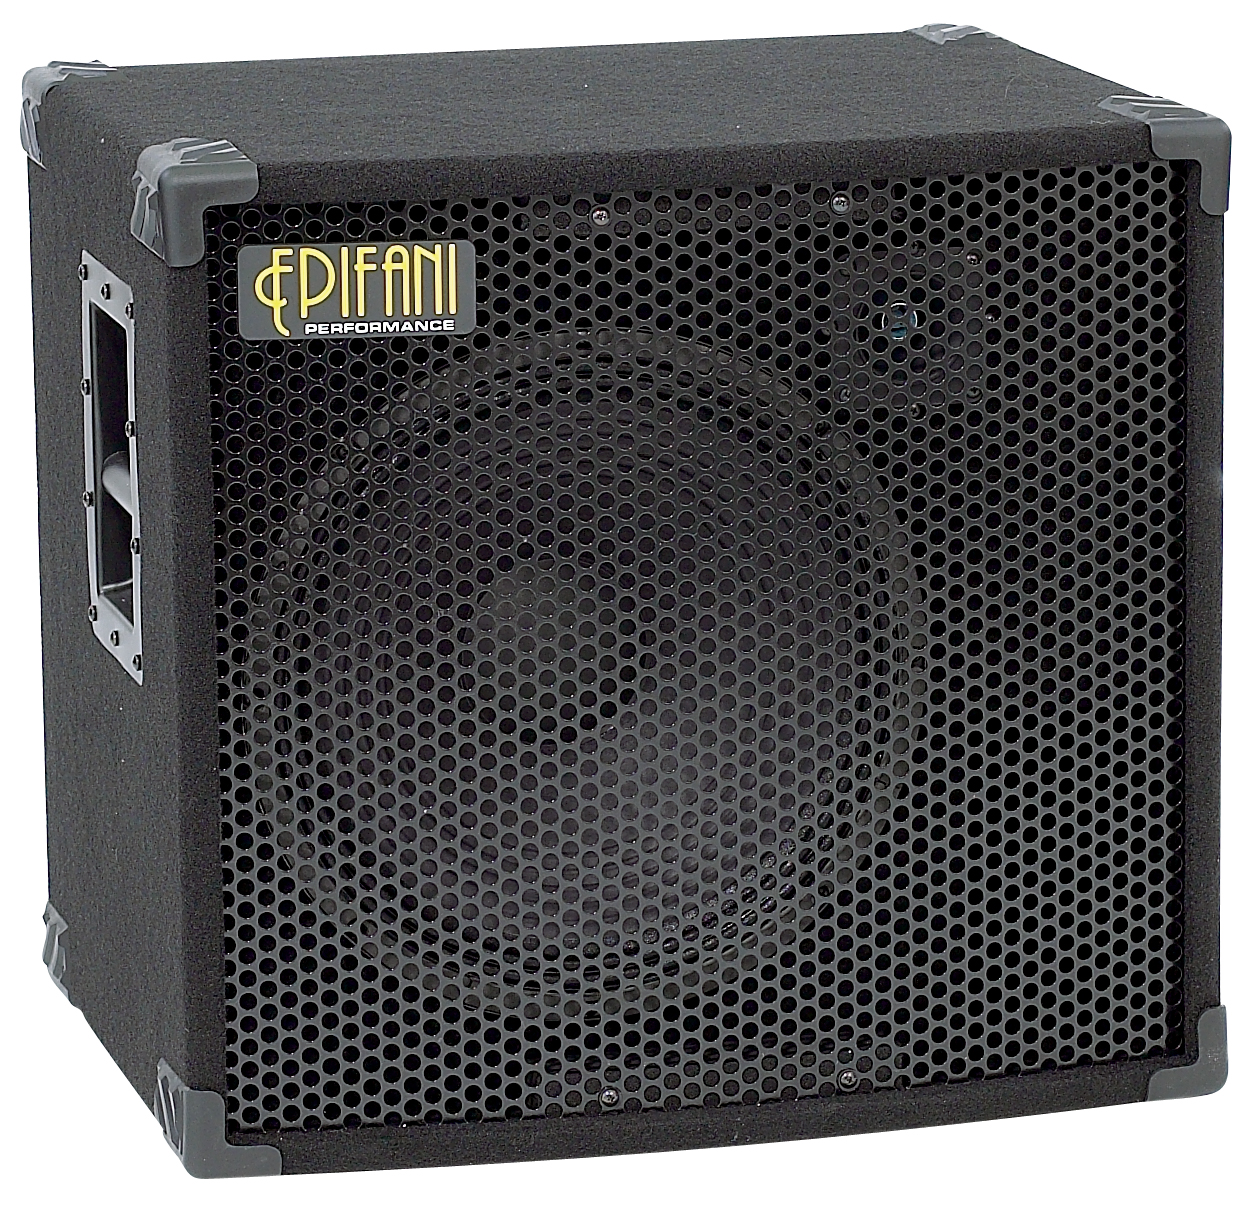 Epifani Epifani PS115 Bass Cabinet, 400 Watts, 1x15 Inch